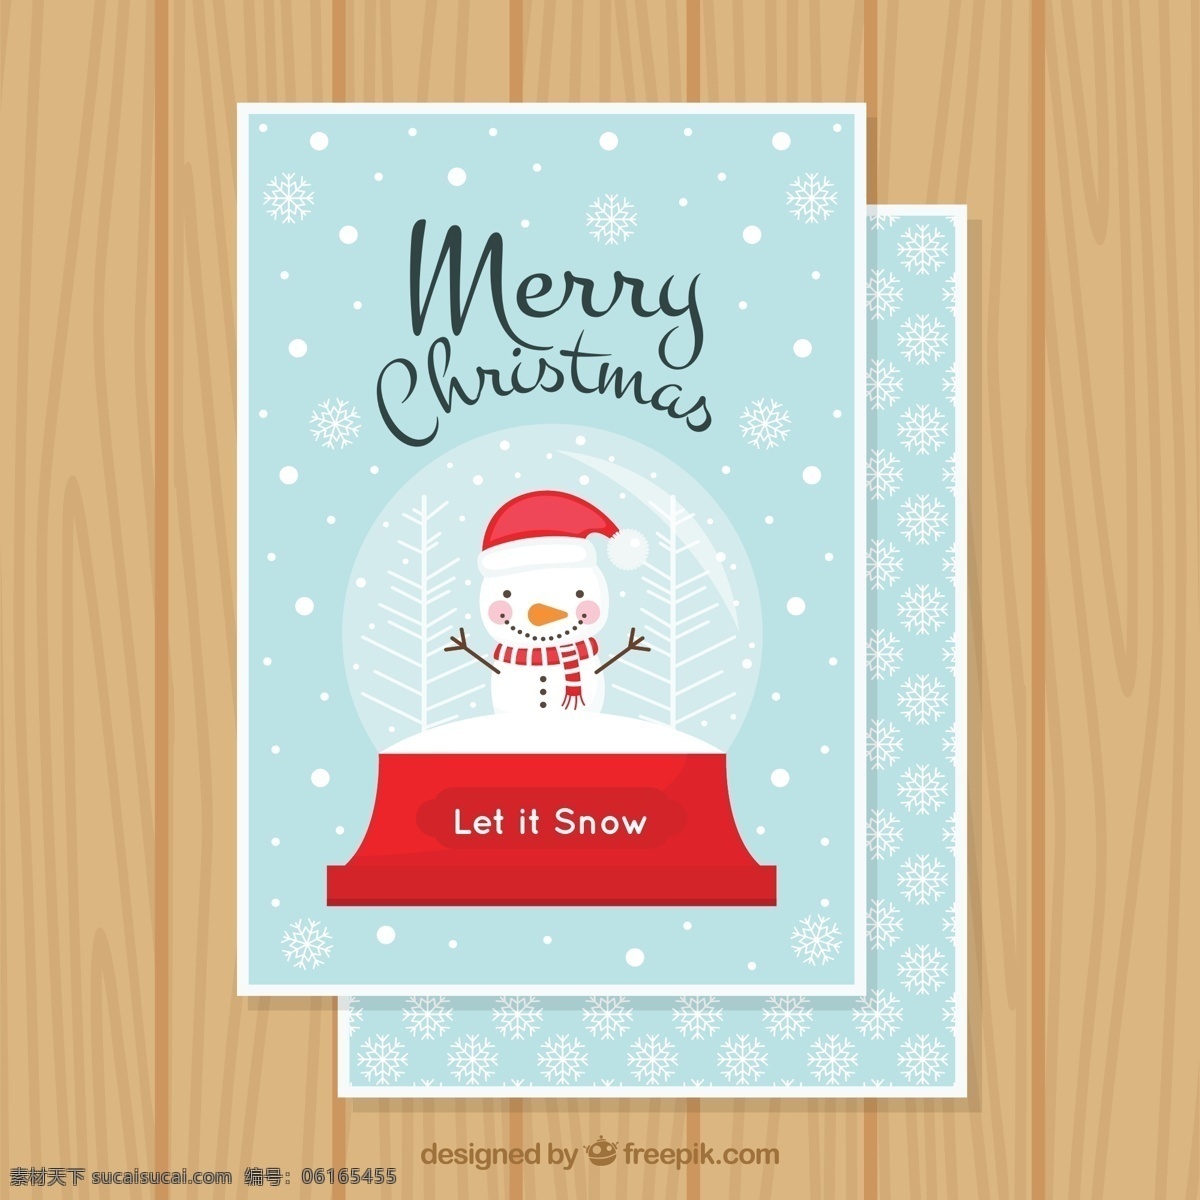 圣诞 雪人 水晶 雪球 贺卡 矢量 木纹 merry christmas 圣诞节 水晶雪球 雪花 矢量图.